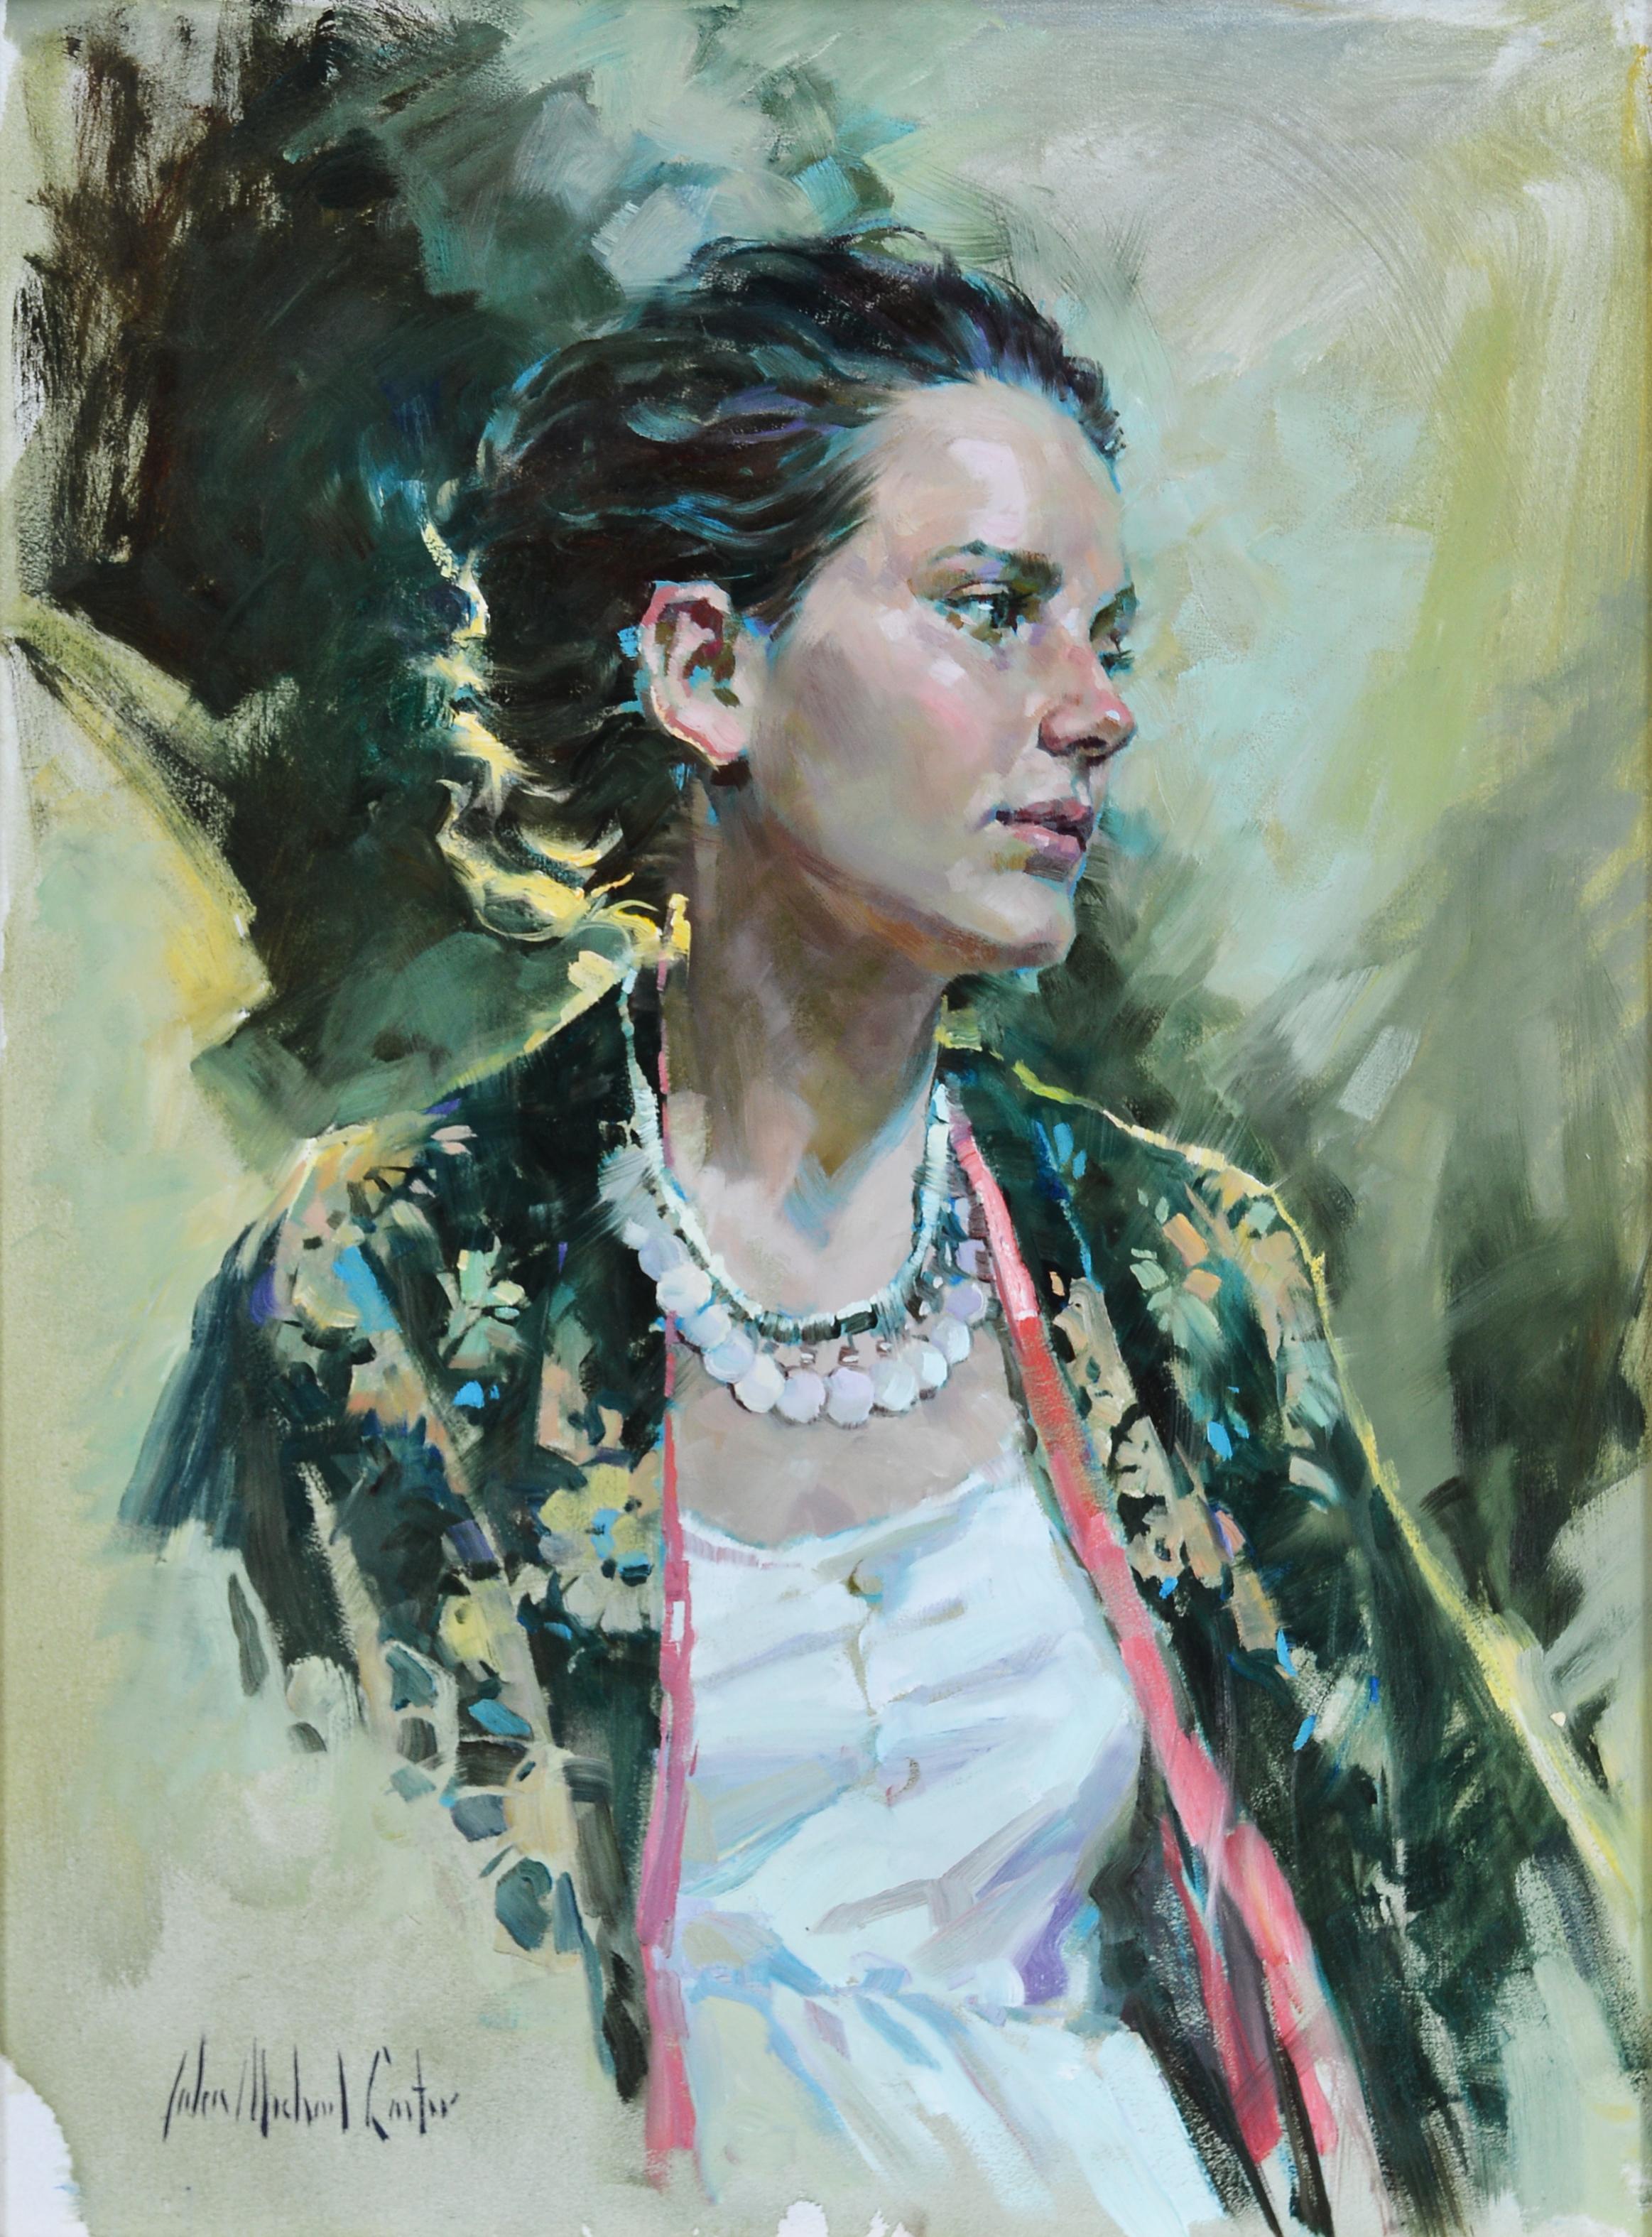 Sarah - Painting by John Michael Carter